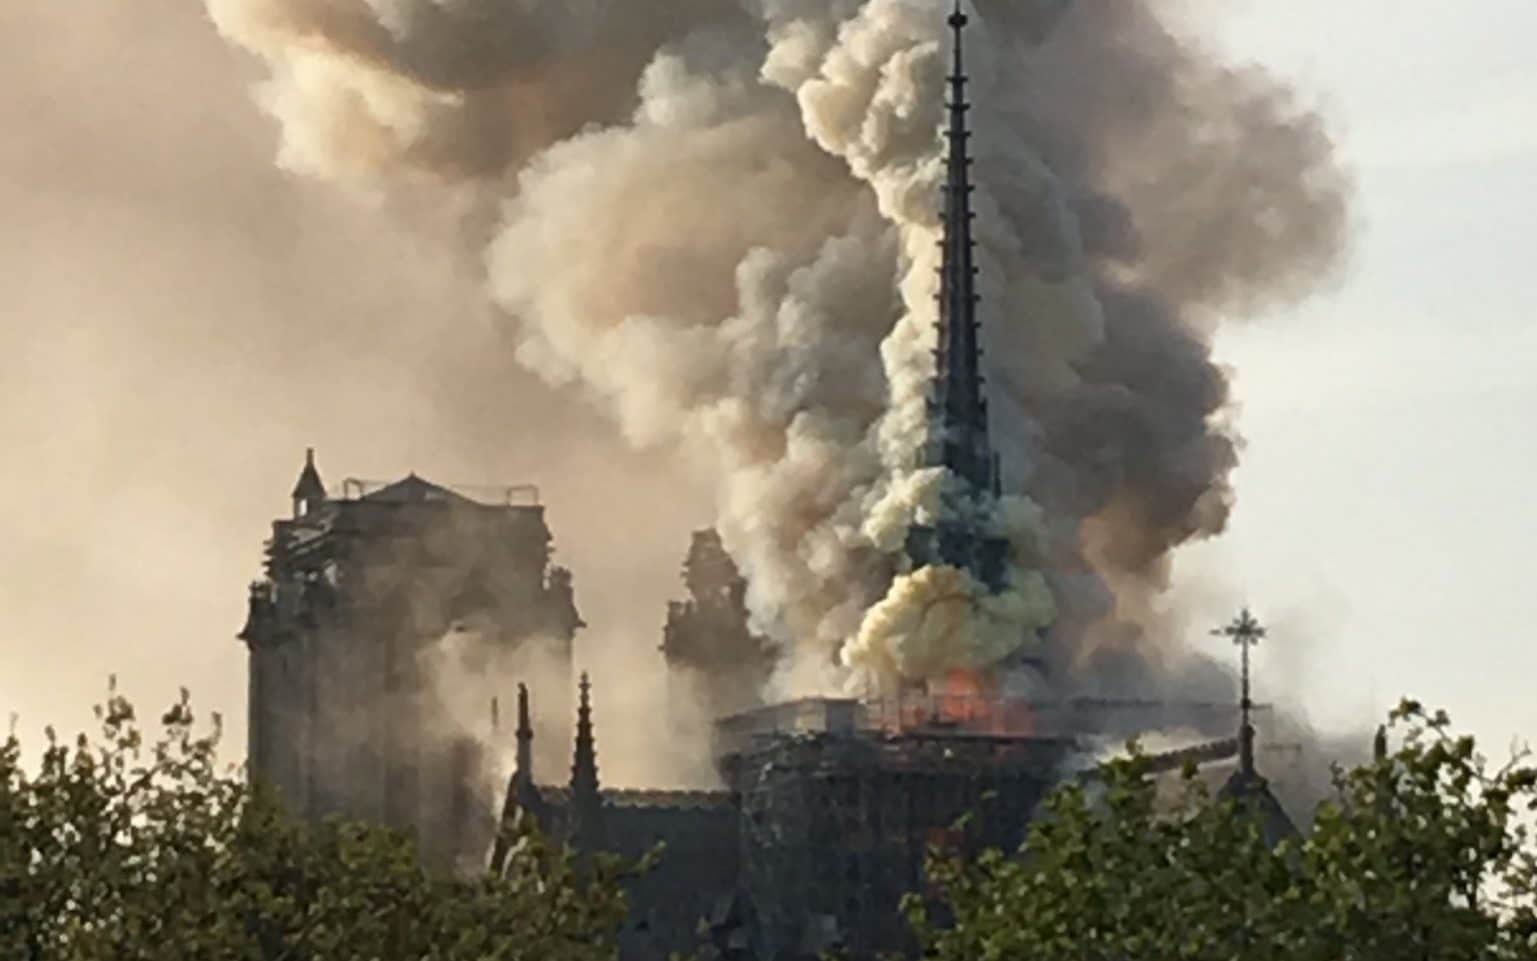 Nhà thờ đức bà Paris bị hỏa hoạn làm tổn thương sâu sắc cộng đồng theo đạo Công giáo không chỉ ở nước Pháp